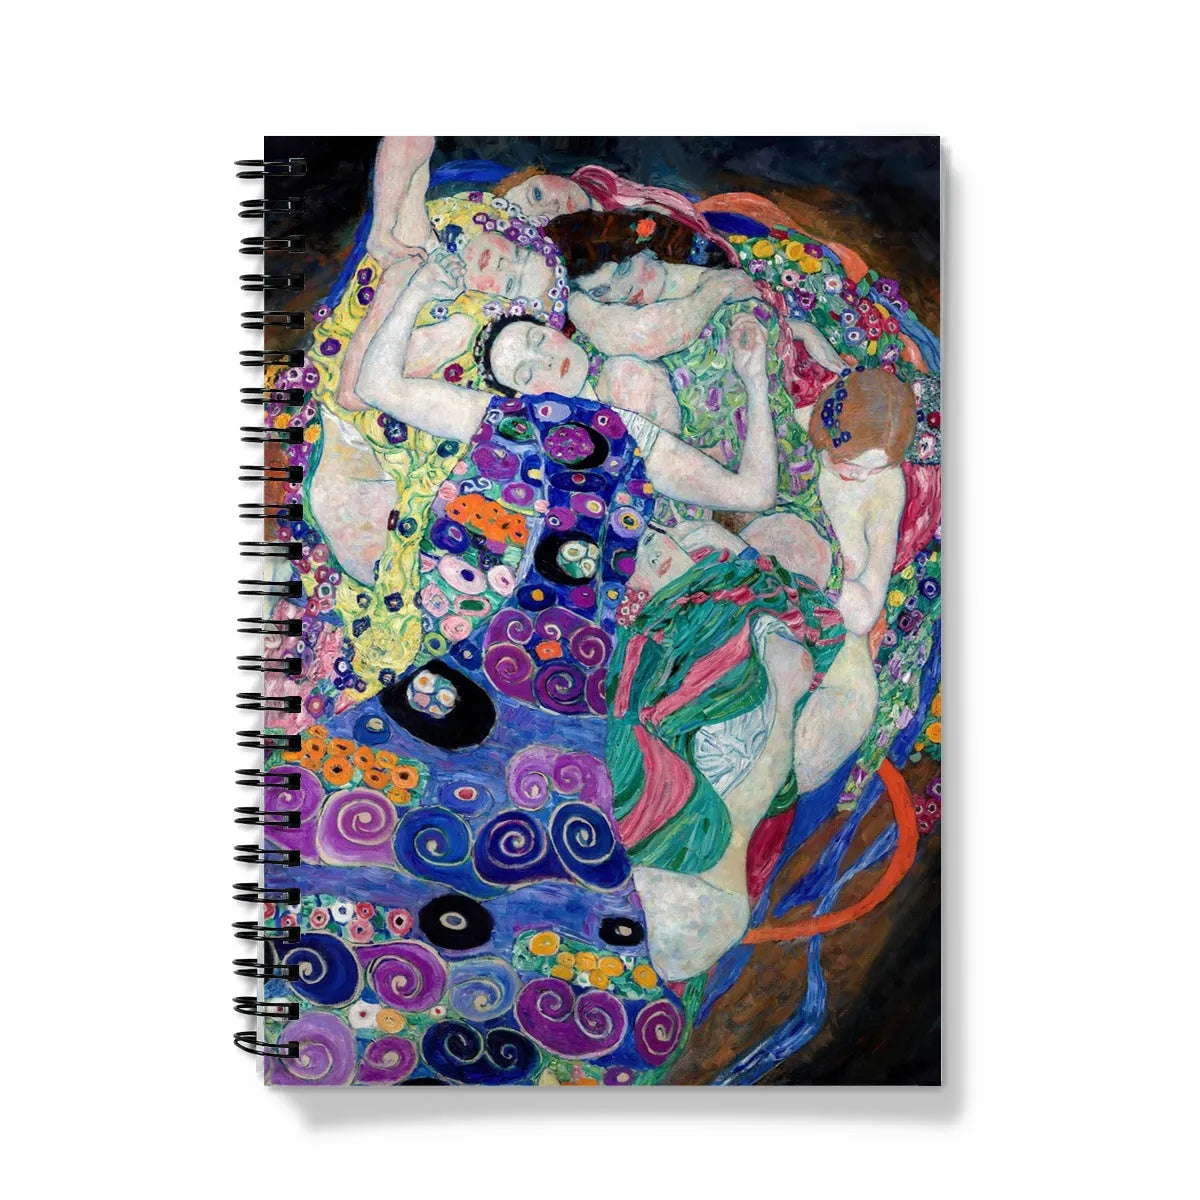 The Virgin By Gustav Klimt Notebook - A5 - Graph Paper - Notebooks & Notepads - Aesthetic Art